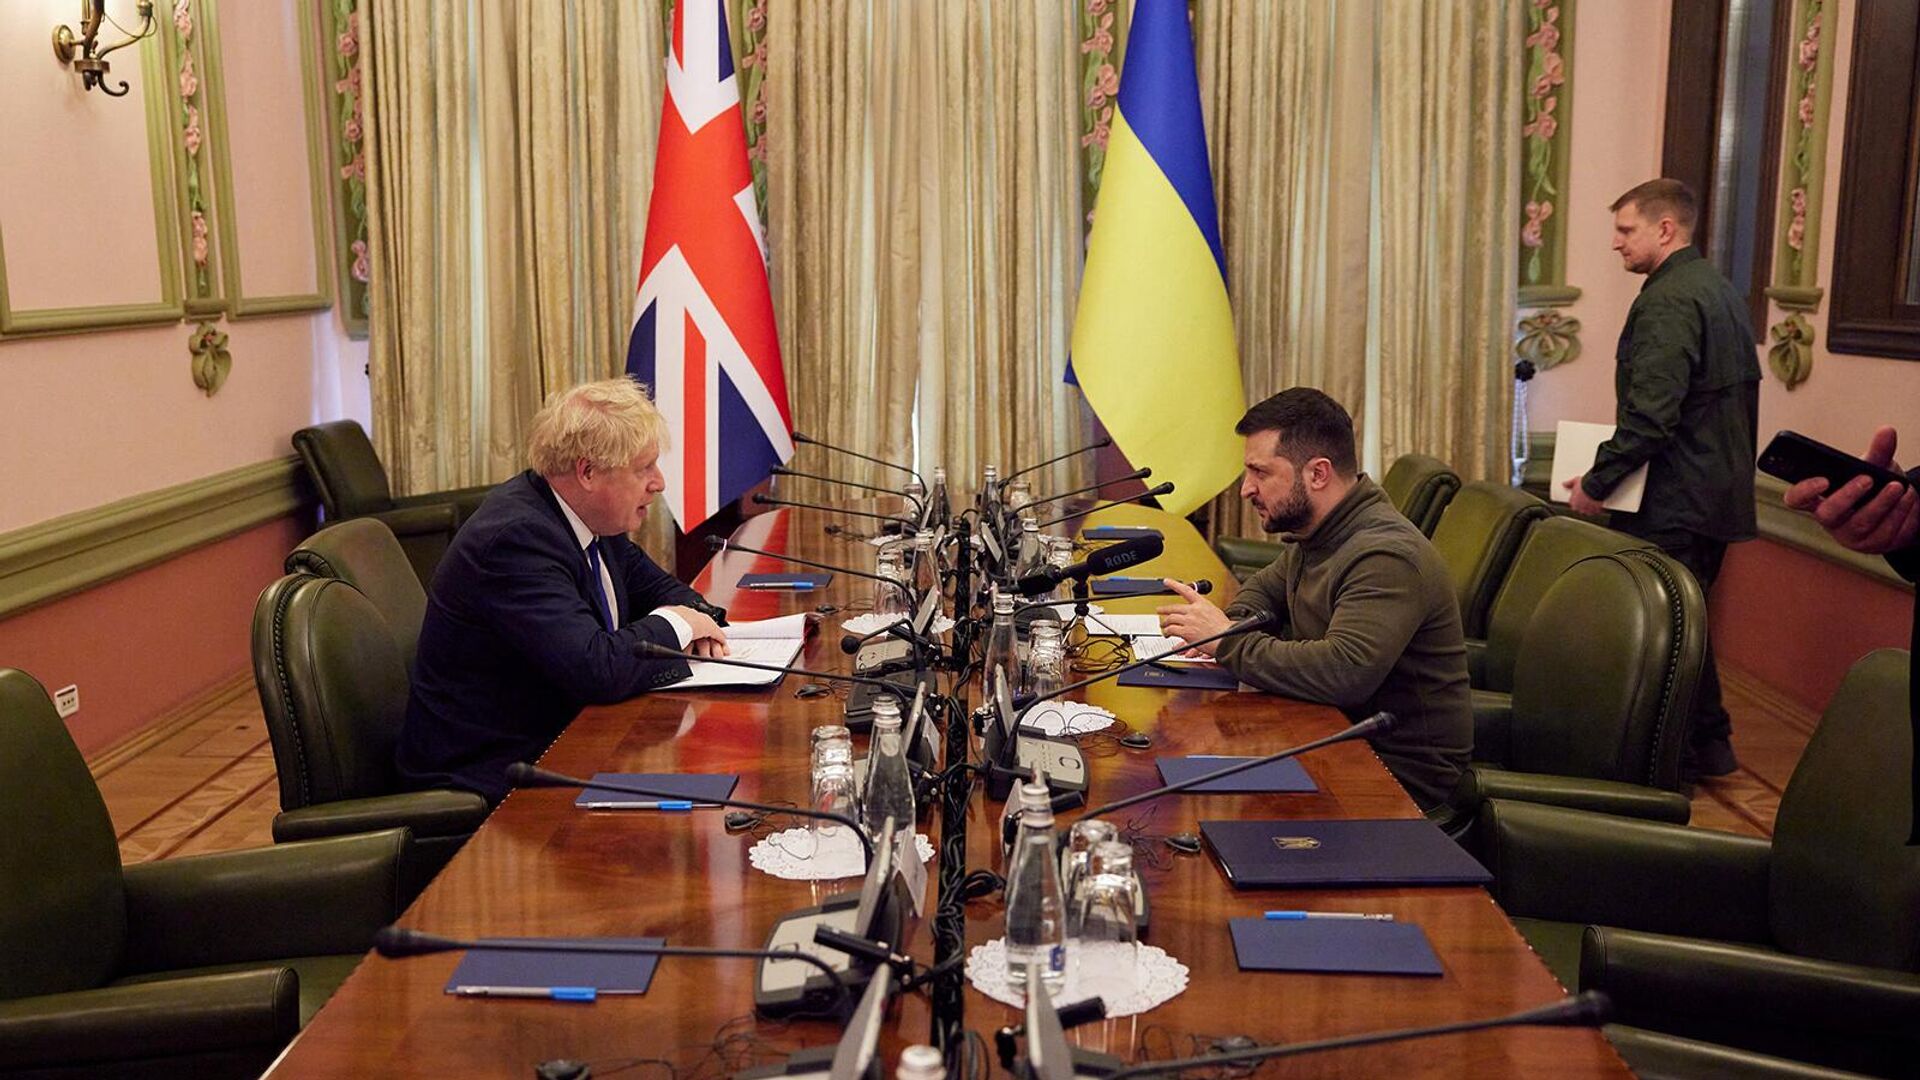 Ուկրաինայի նախագահ Վլադիմիր Զելենսկիի և Մեծ Բրիտանիայի վարչապետ Բորիս Ջոնսոնի հանդիպումը (9 ապրիլի, 2022թ)․ Կիև - Sputnik Արմենիա, 1920, 09.04.2022